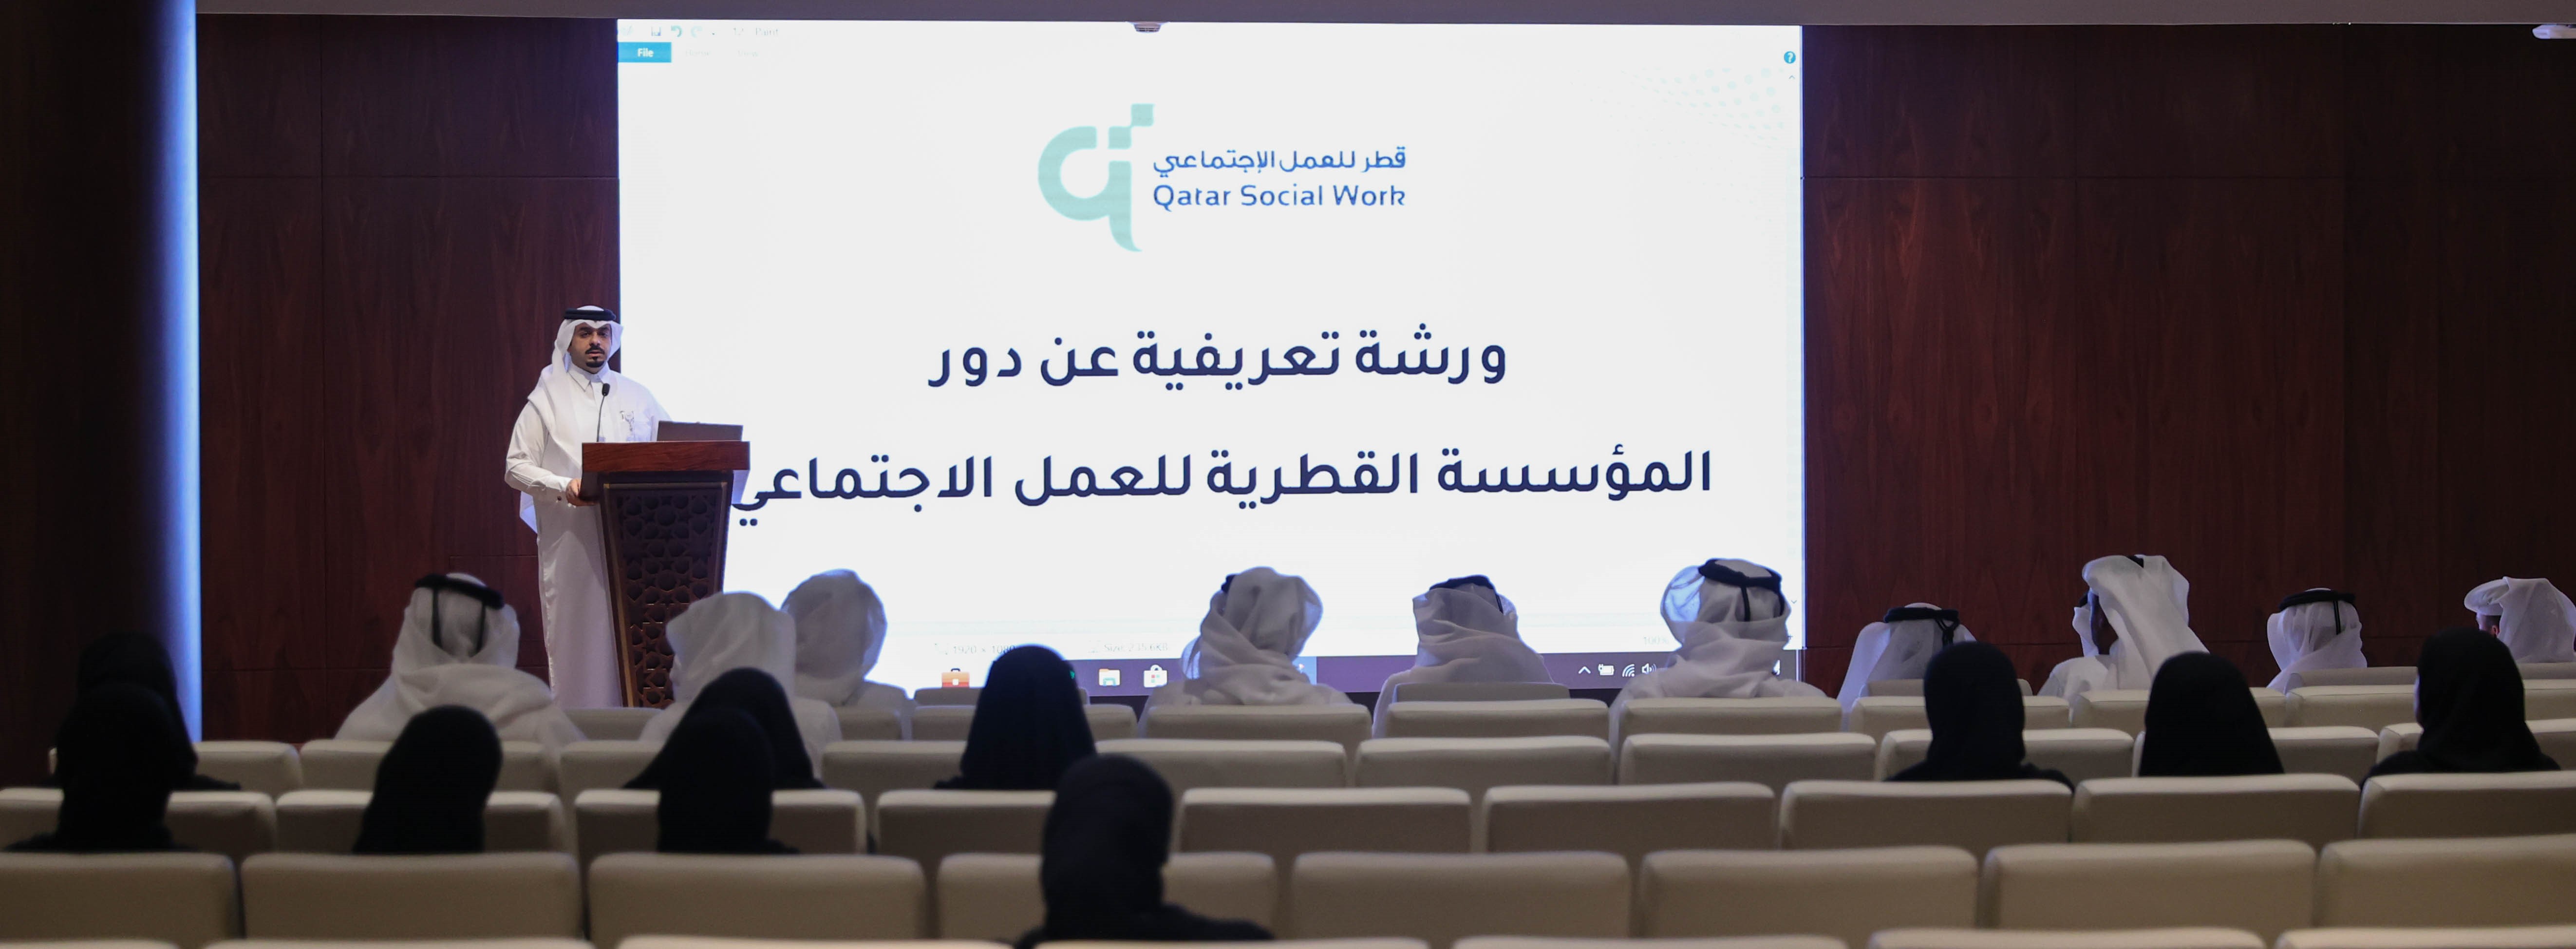 وزارة التجارة والصناعة تنظم لقاءً تعريفياً بخدمات المؤسسة القطرية للعمل الاجتماعي ومراكزها